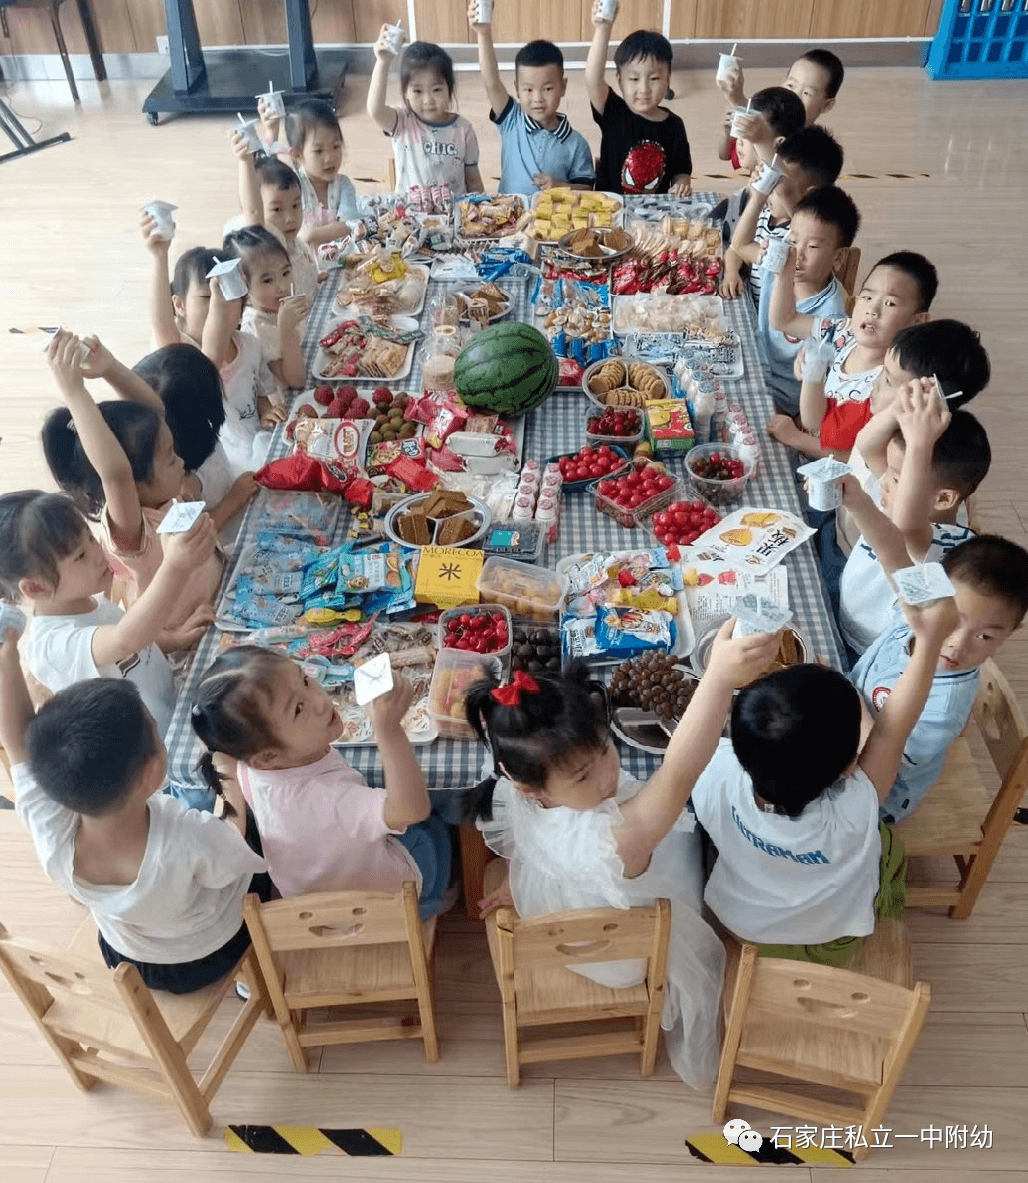 【幼之育】嗨玩一夏 疯狂六一 ——石家庄私立第一中学幼儿园庆六一活动